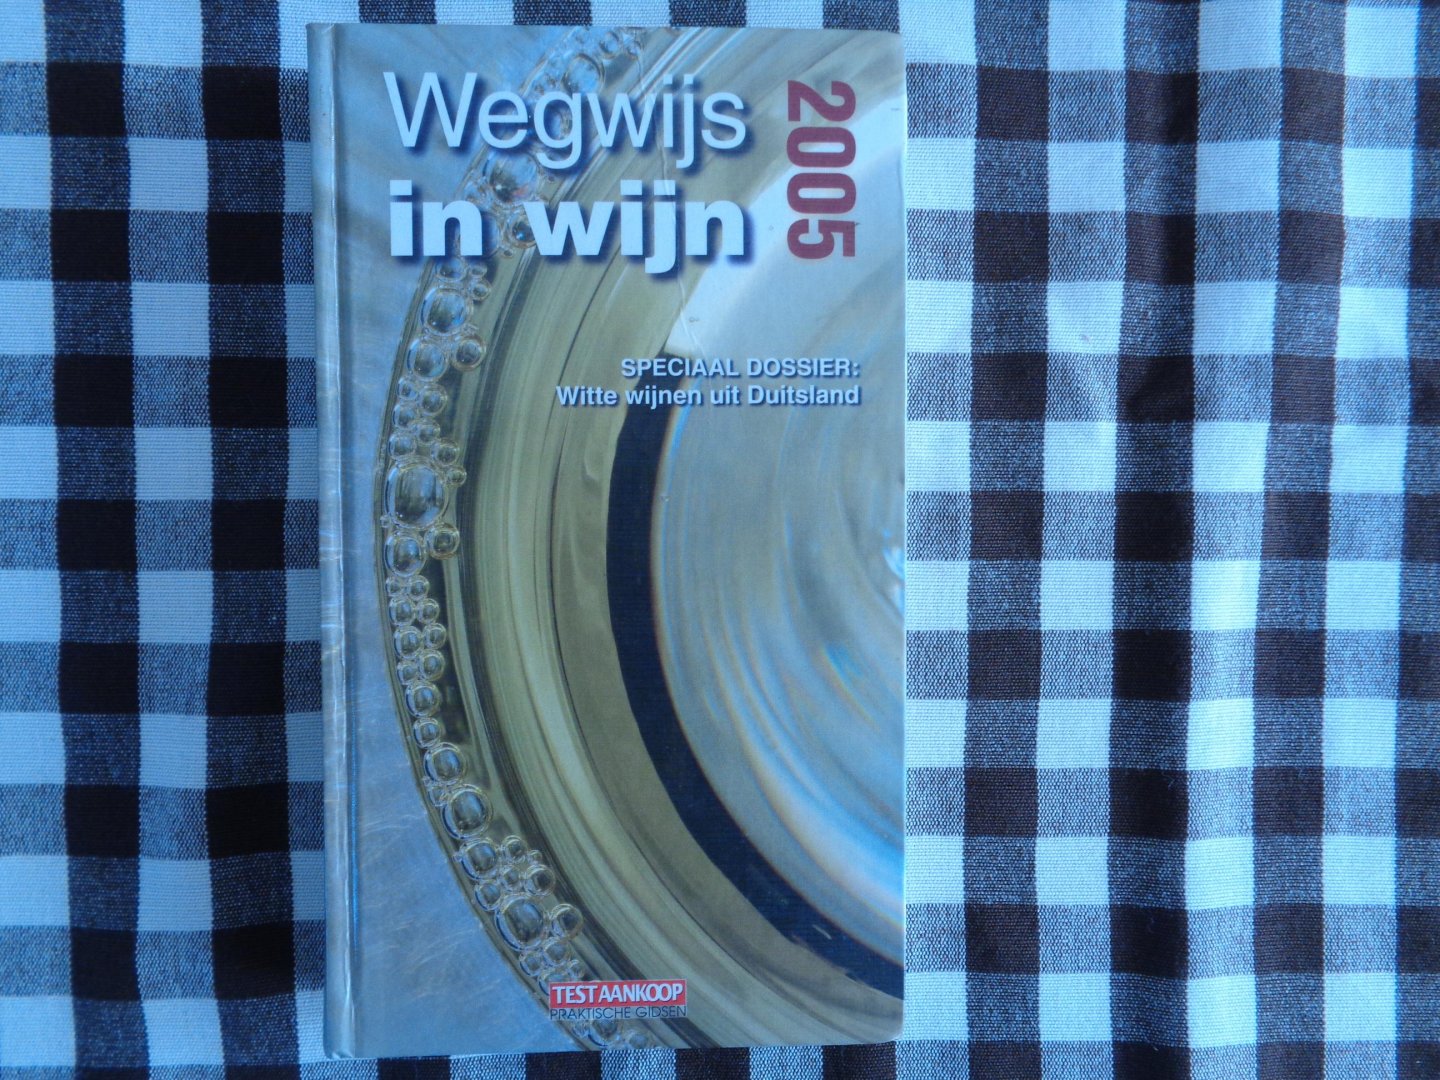 Baert, M. - Wegwijs in wijn / 2005 / druk 1